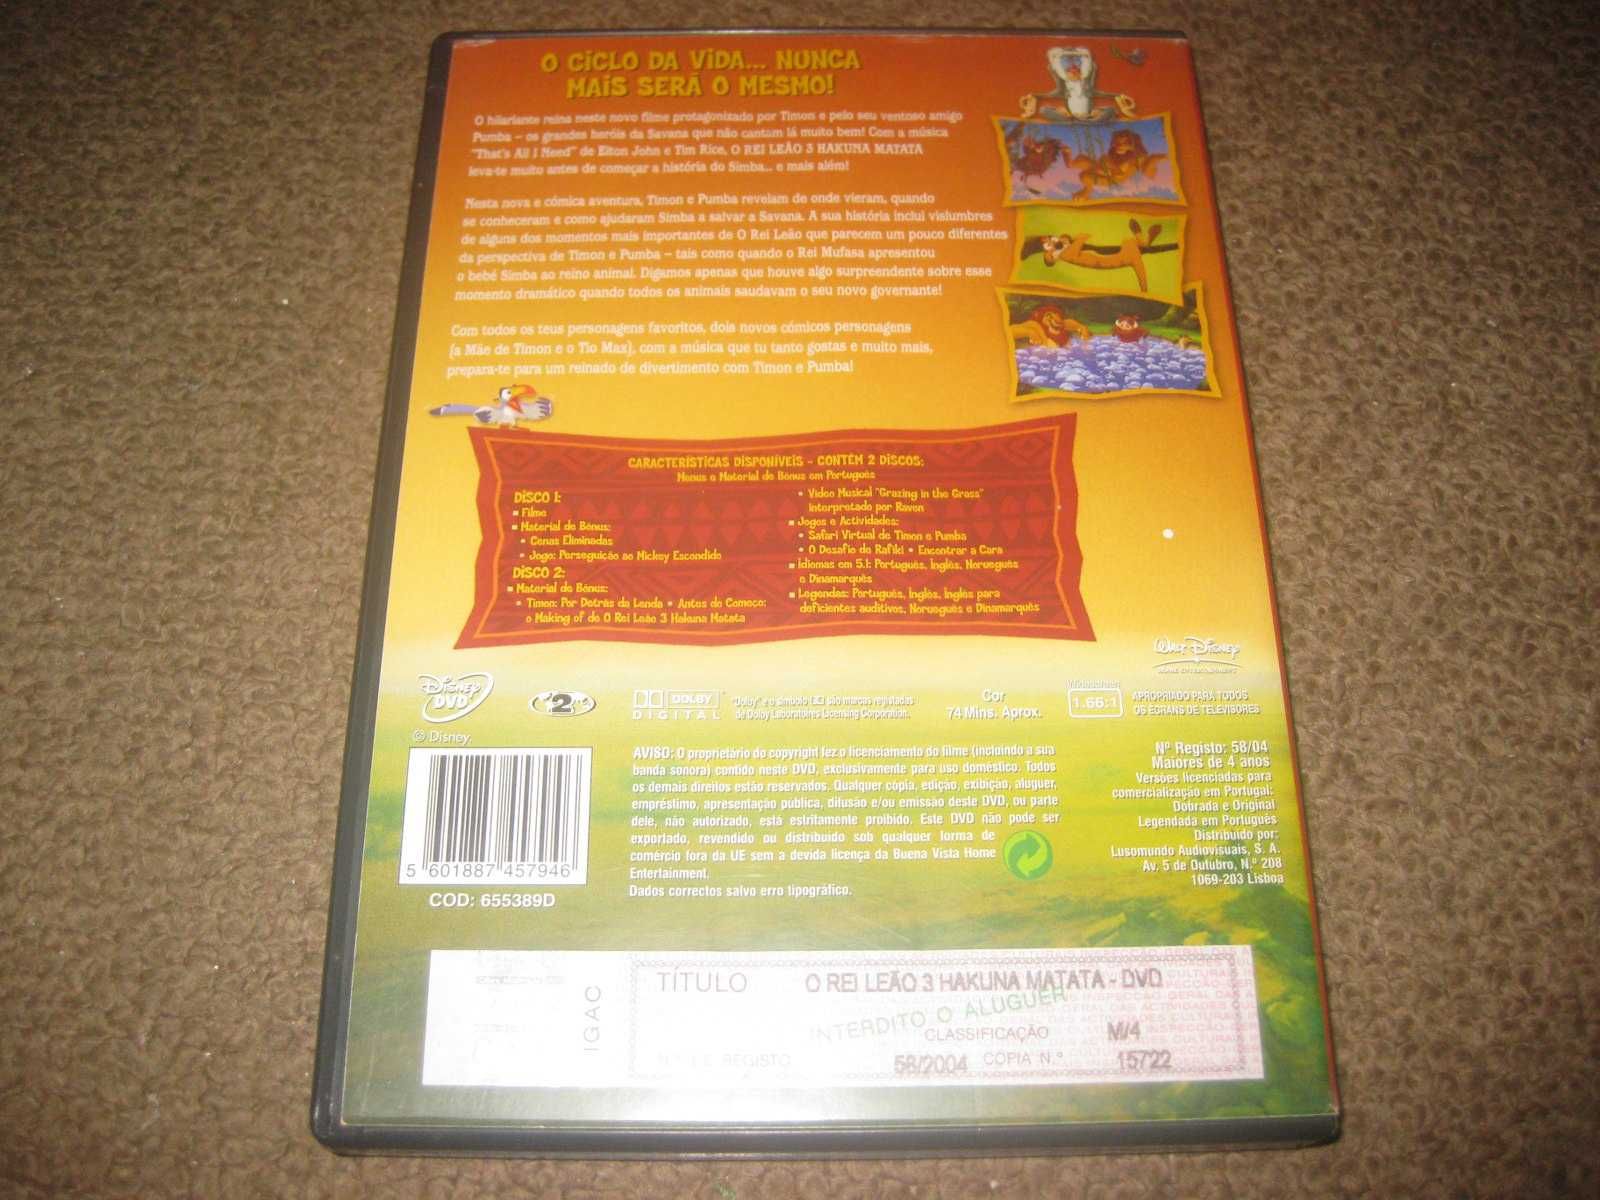 "O Rei Leão 3: Hakuna Matata" Edição Especial com 2 DVDs